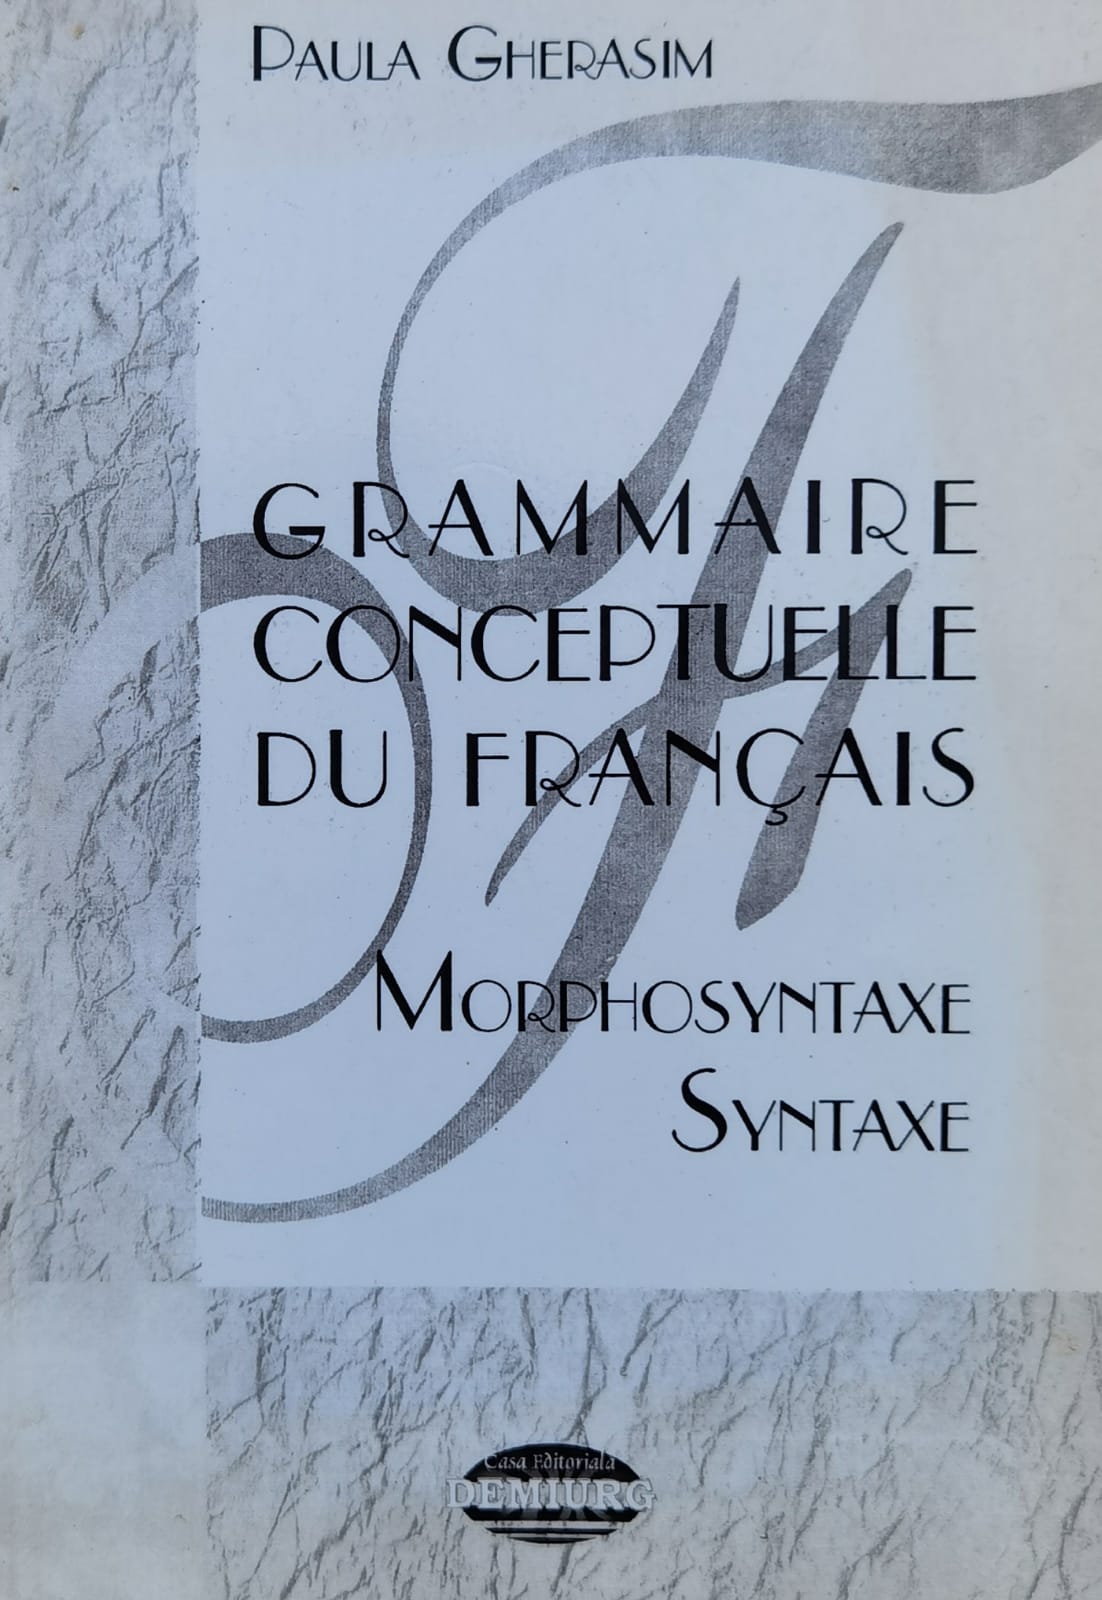 grammaire conceptuelle du francais, vol. ii - morphosyntaxe, syntaxe                                 paula gherasim                                                                                      